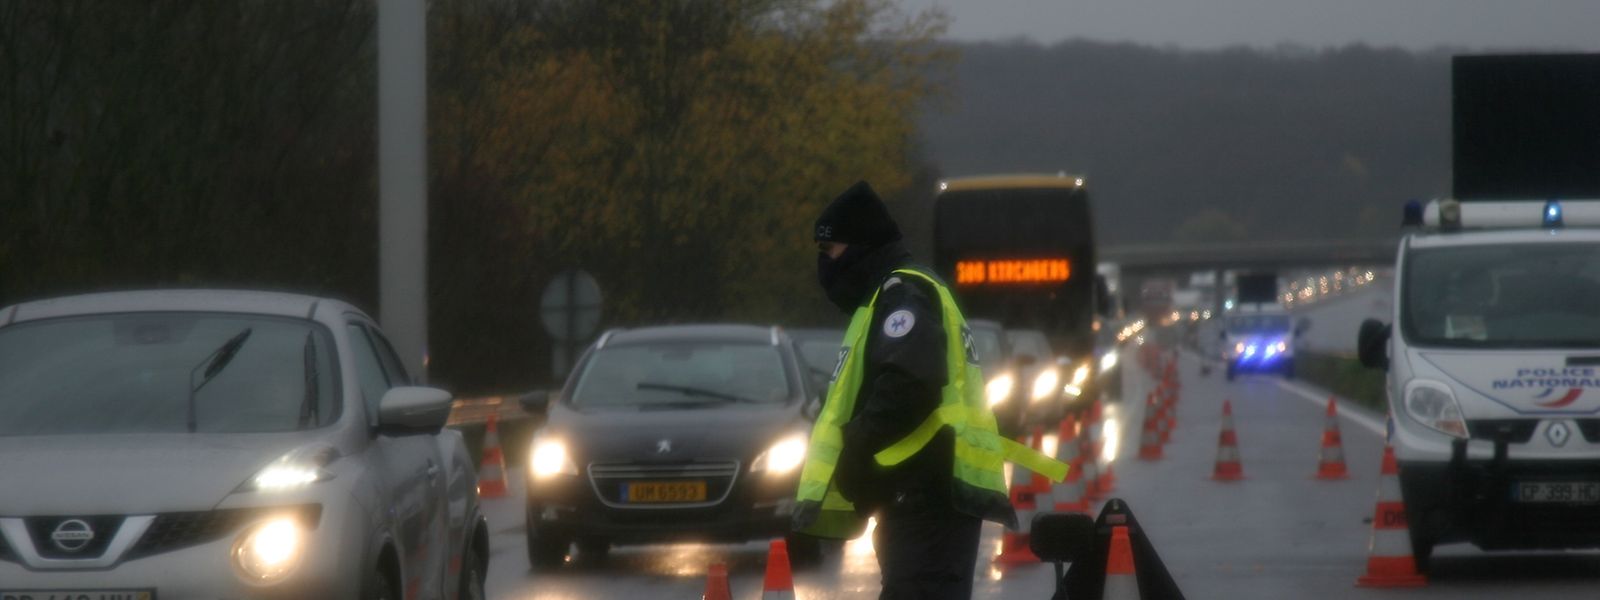 Voilà seize jours que les contrôles de police permanents réalisés sur l'A31 (l'autoroute est réduite à une seule voie, dans les deux sens) ralentissent considérablement le trafic autoroutier entre la France et le Luxembourg. 